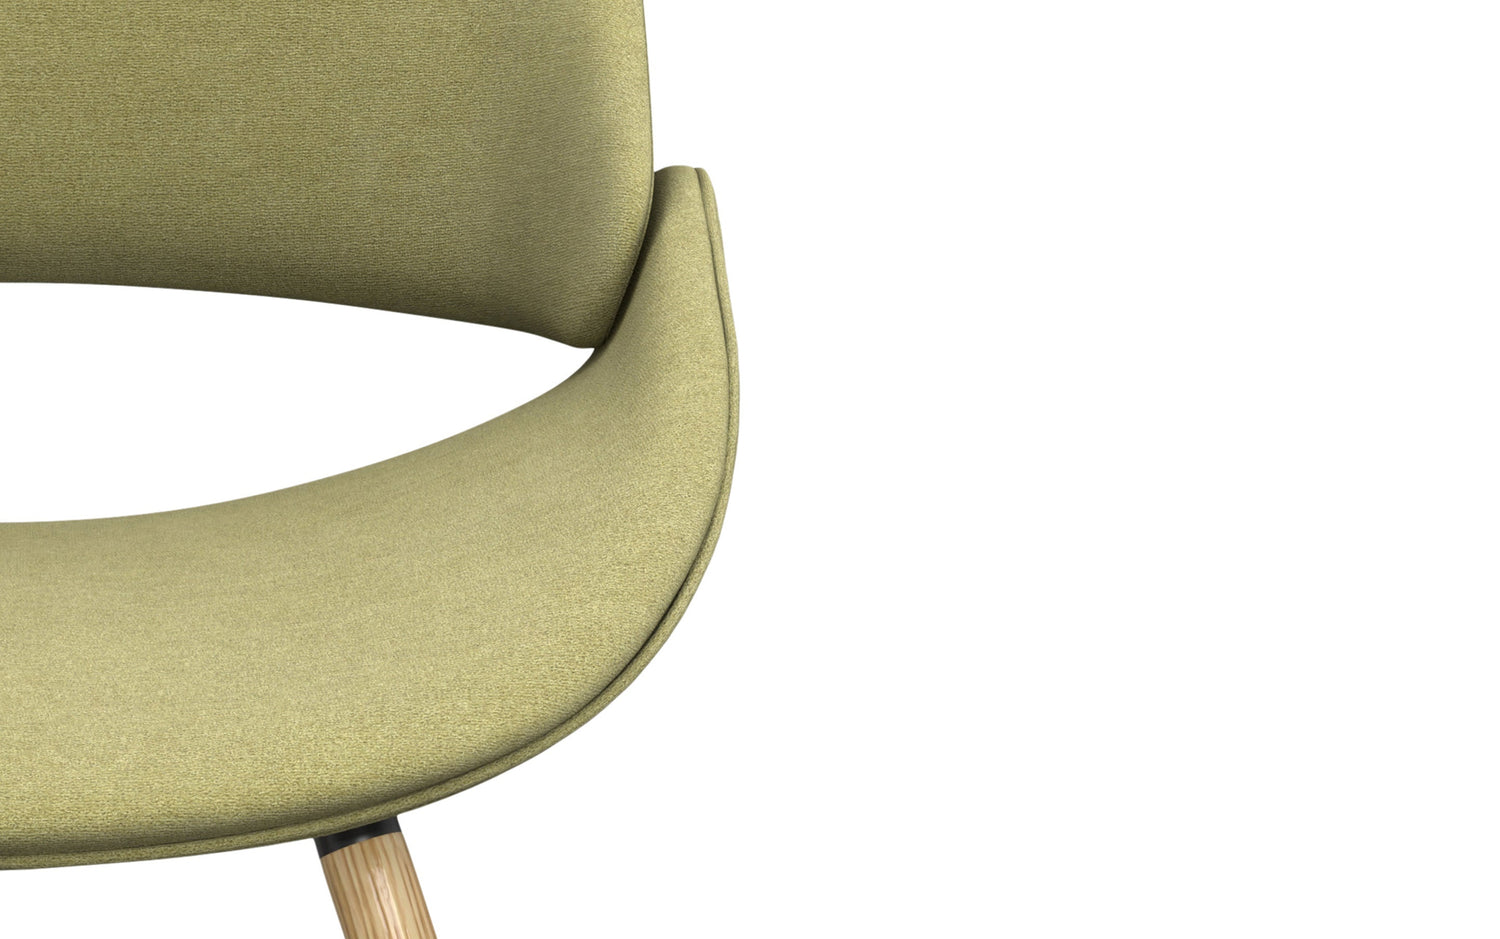 Acid Green Natural Oak | Malden Bentwood Dining Chair